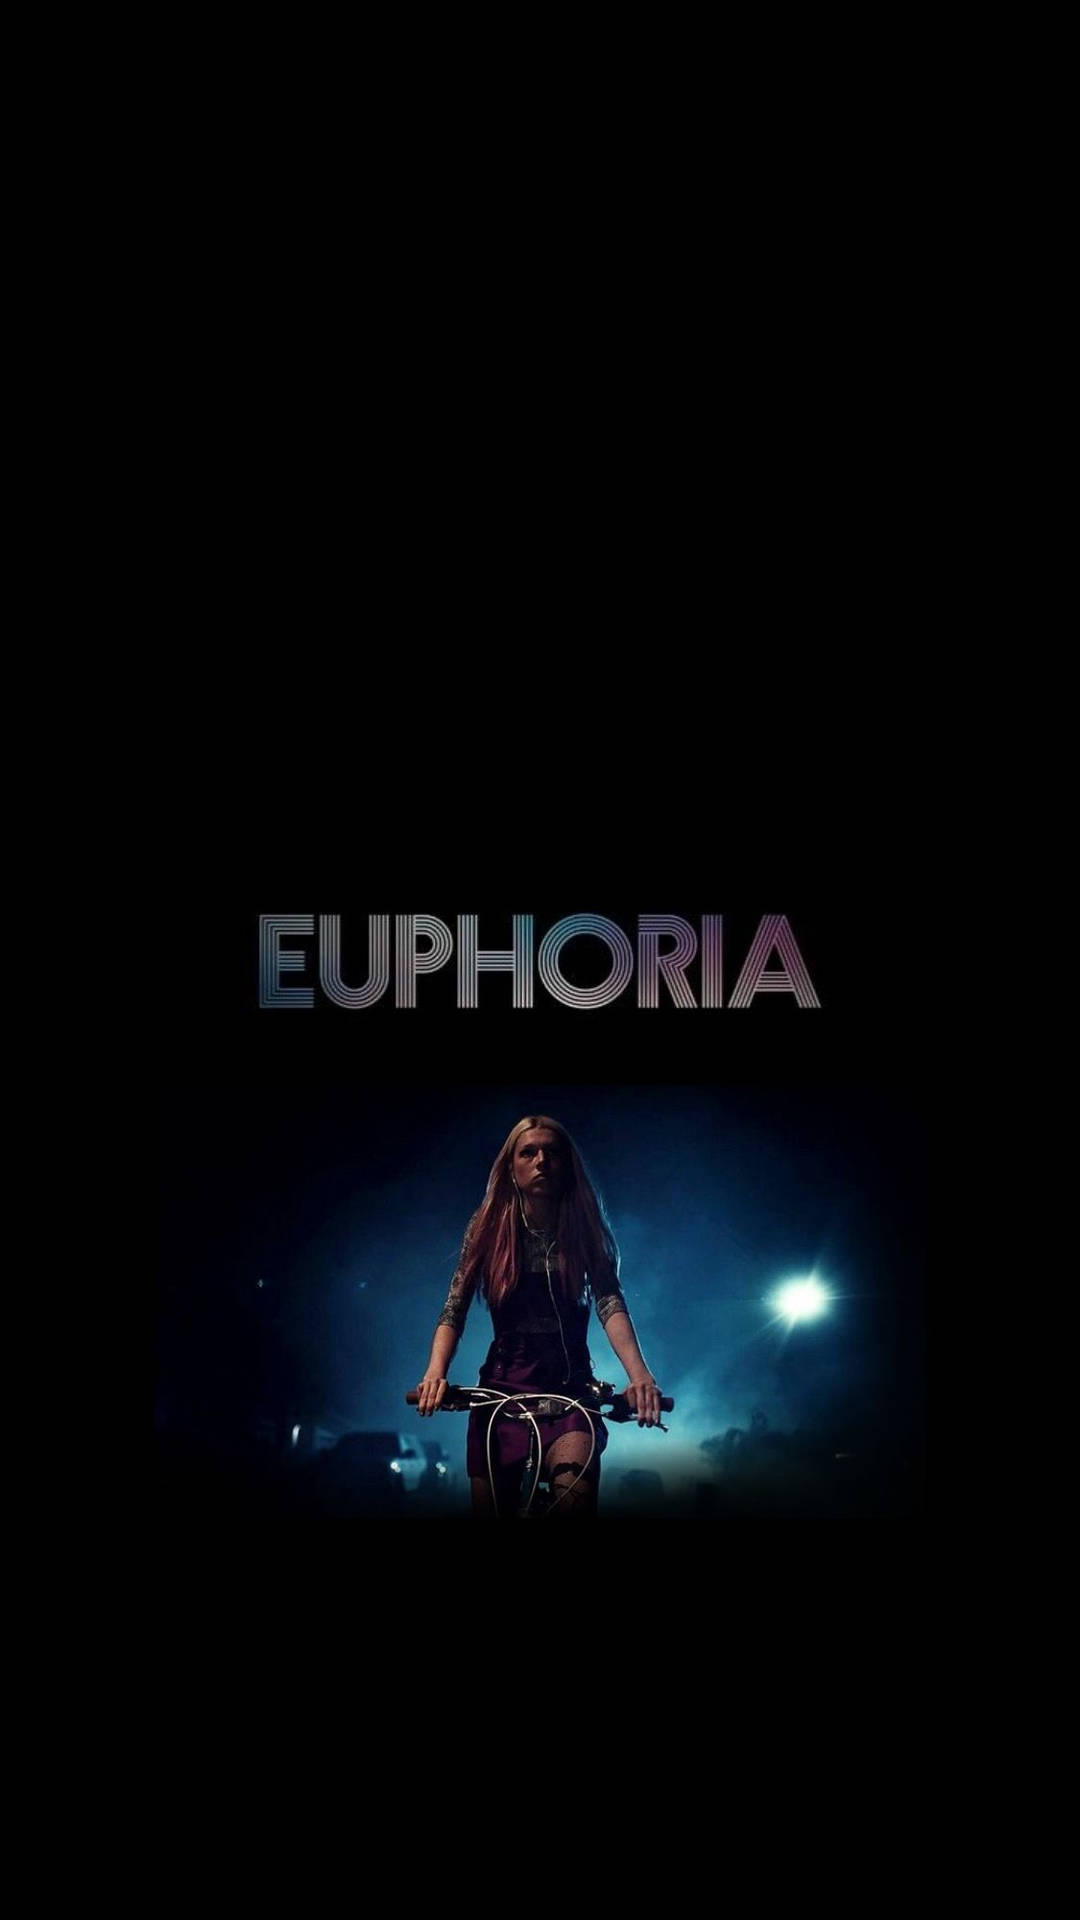 Euphoria Bike Scene Wallpaper